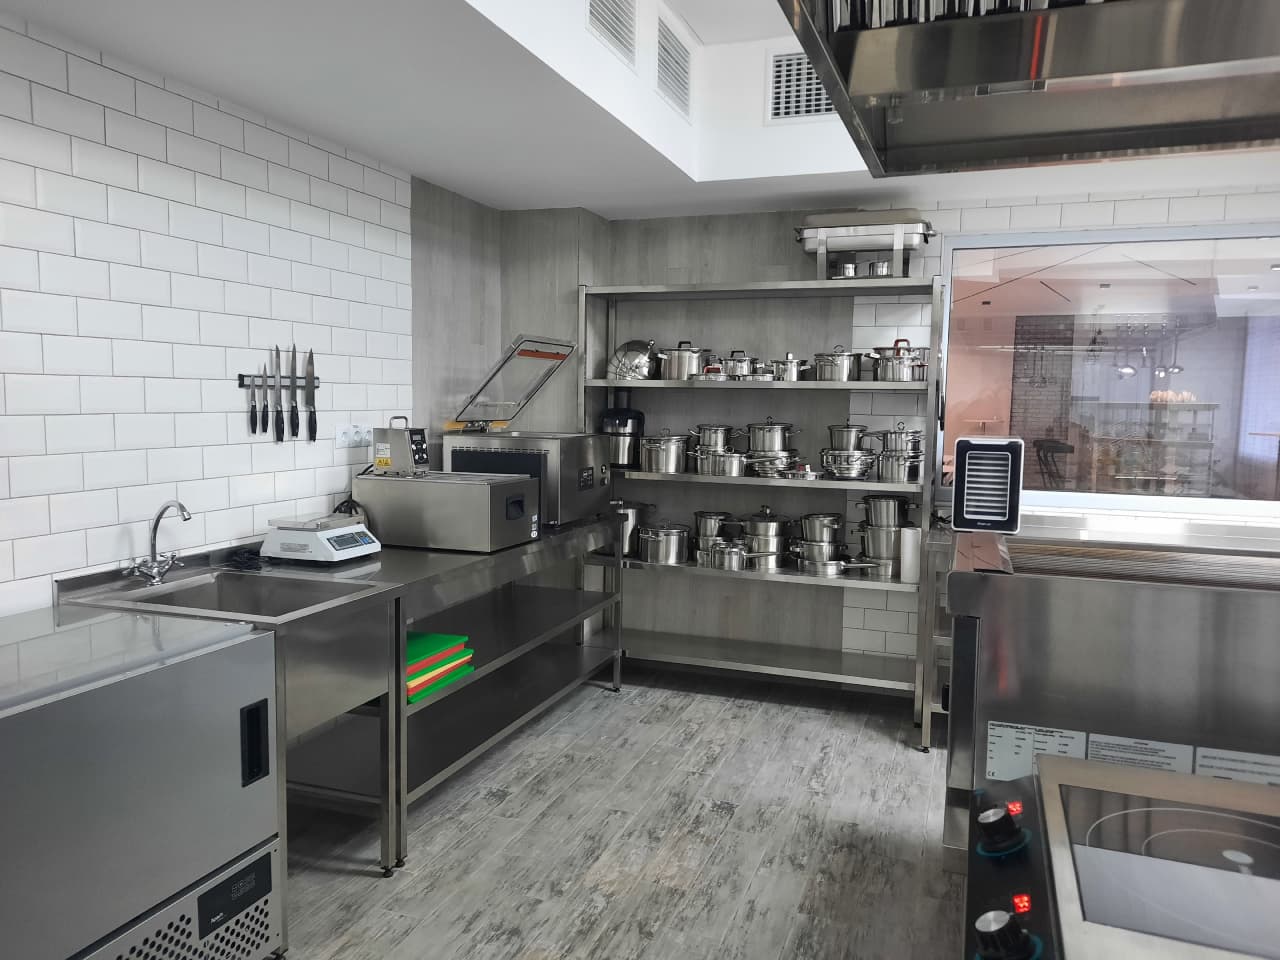 навчально-практичний центр сучасних кулінарних технологій на базі Вищого професійного училища № 33.